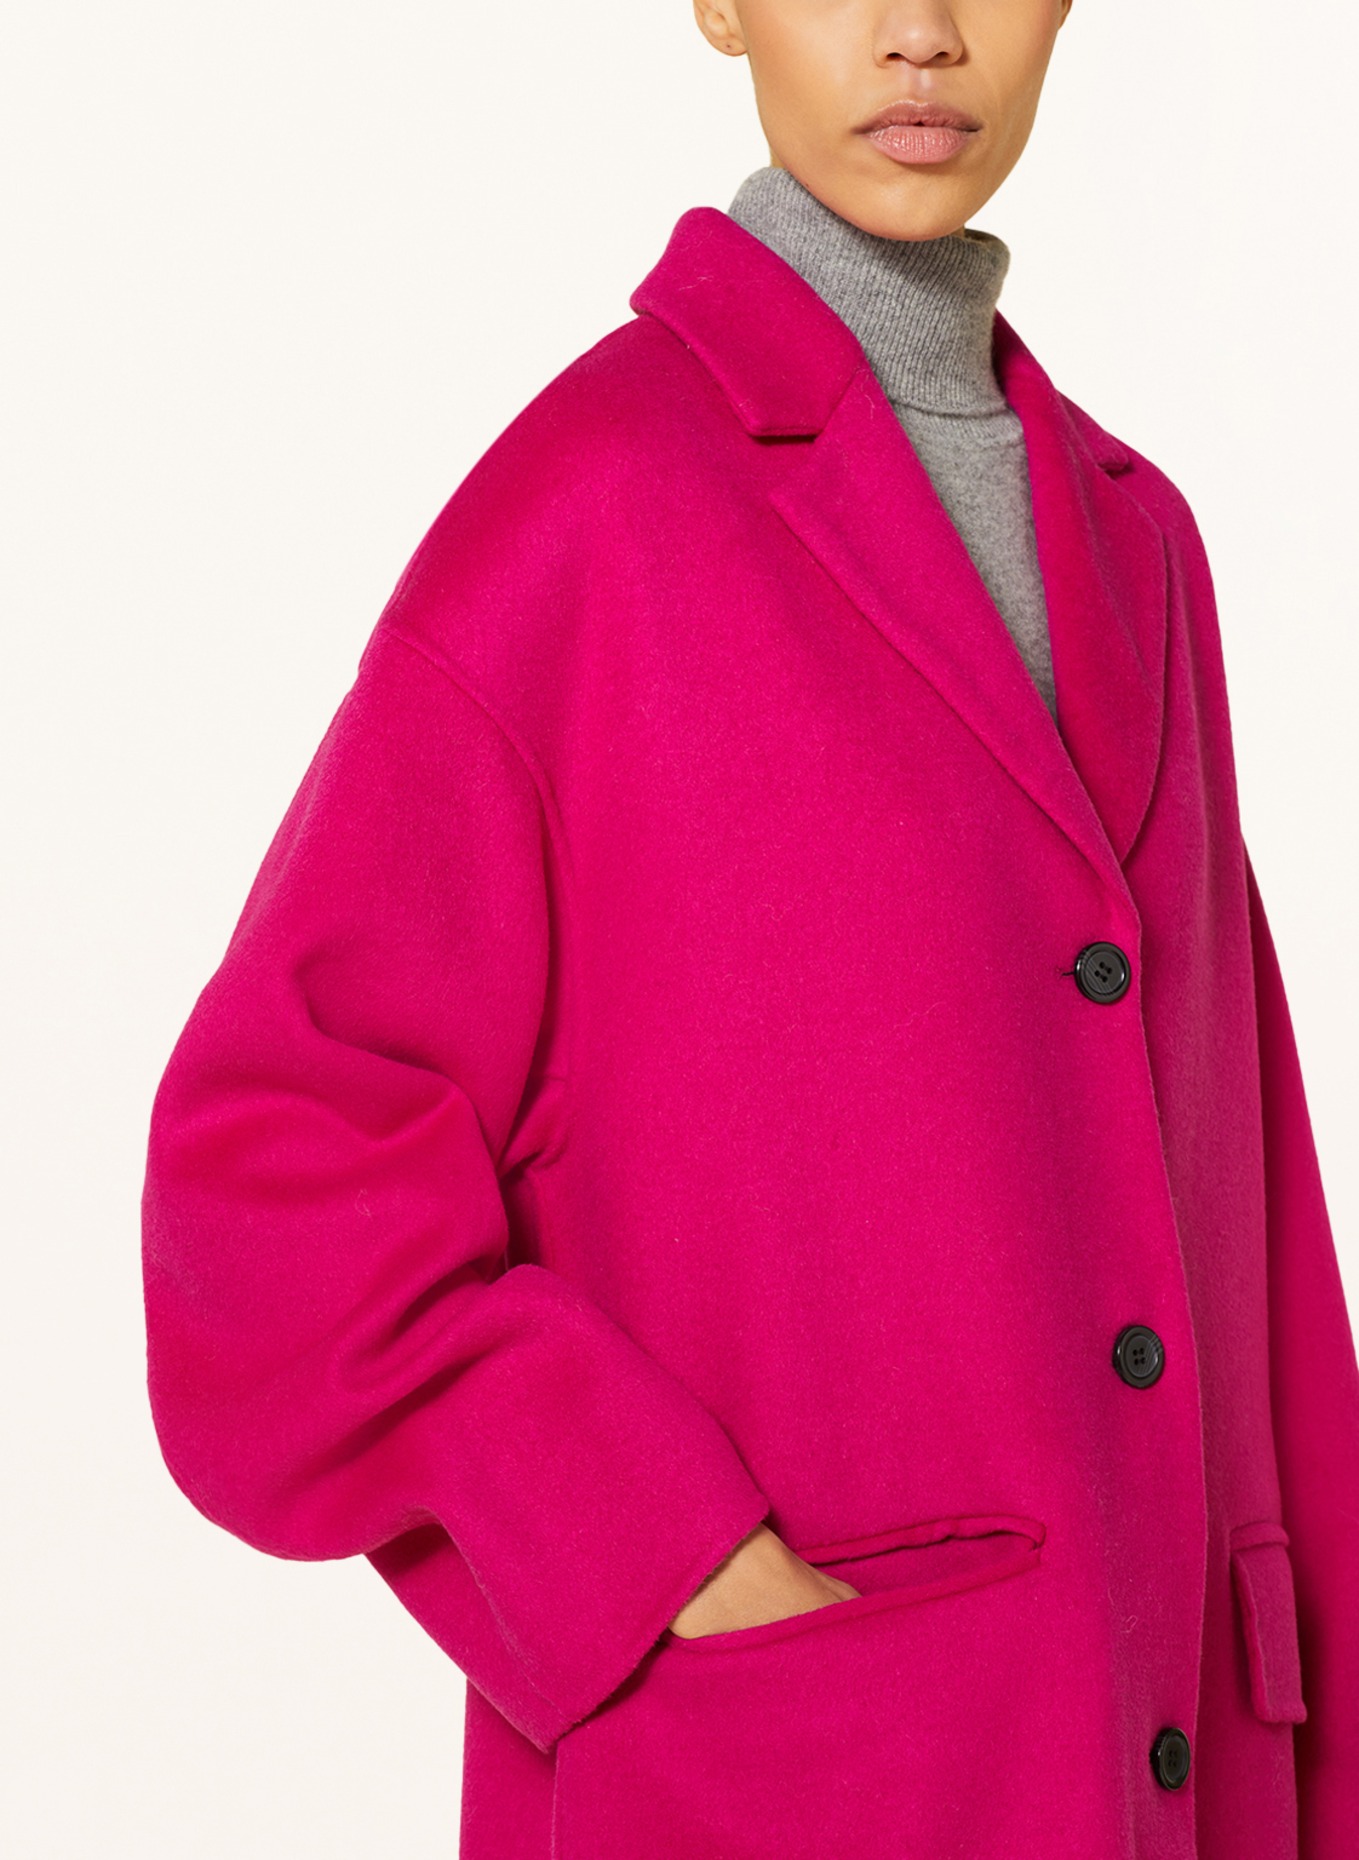 STAND STUDIO Wool coat CRISTOBAL, Color: FUCHSIA (Image 4)